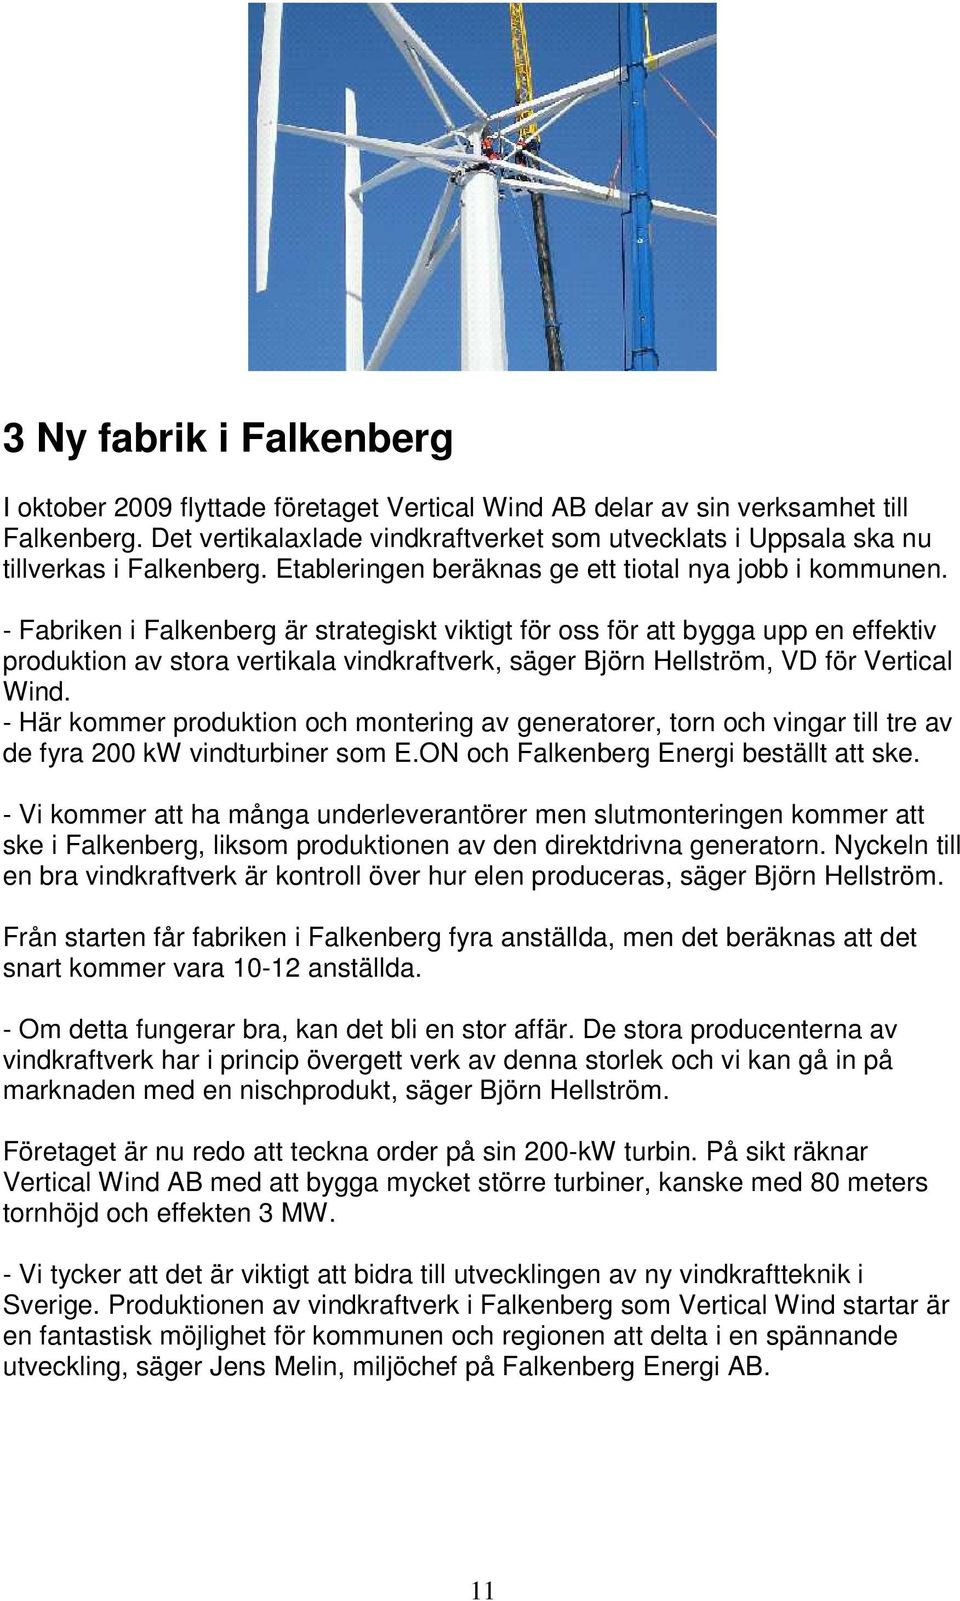 - Fabriken i Falkenberg är strategiskt viktigt för oss för att bygga upp en effektiv produktion av stora vertikala vindkraftverk, säger Björn Hellström, VD för Vertical Wind.